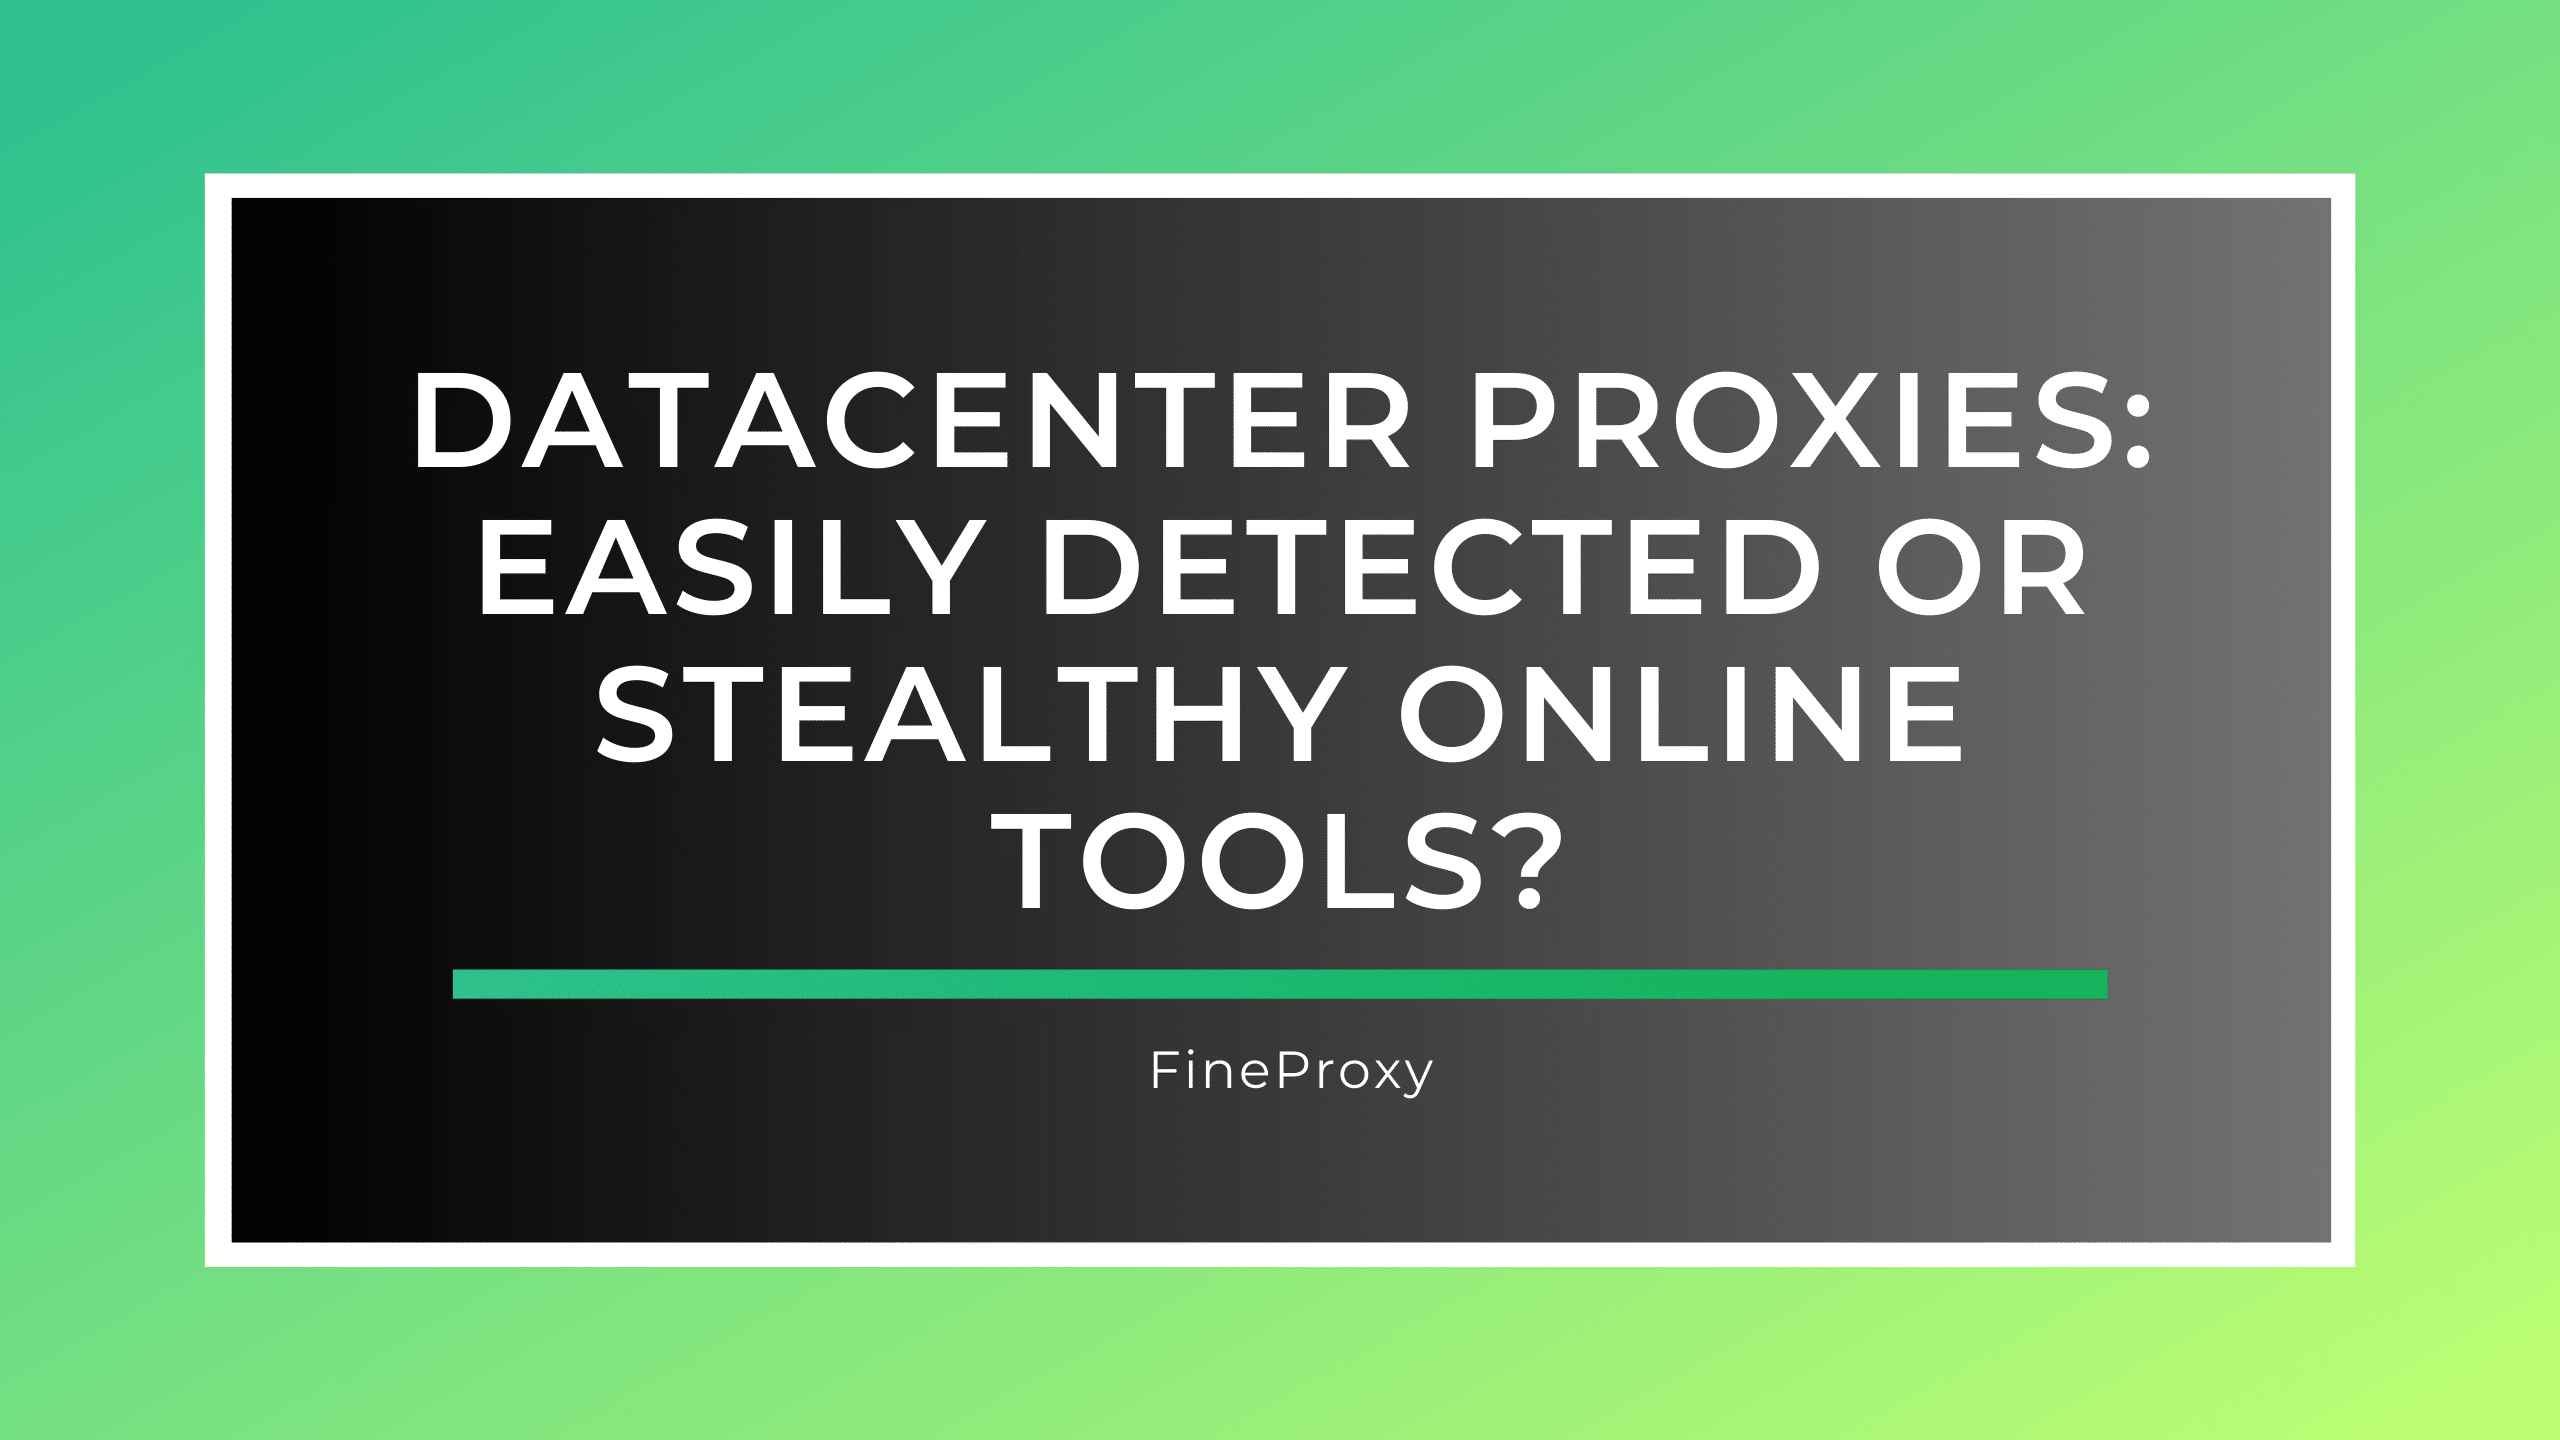 Proxies de datacenter: ferramentas on-line facilmente detectadas ou furtivas?